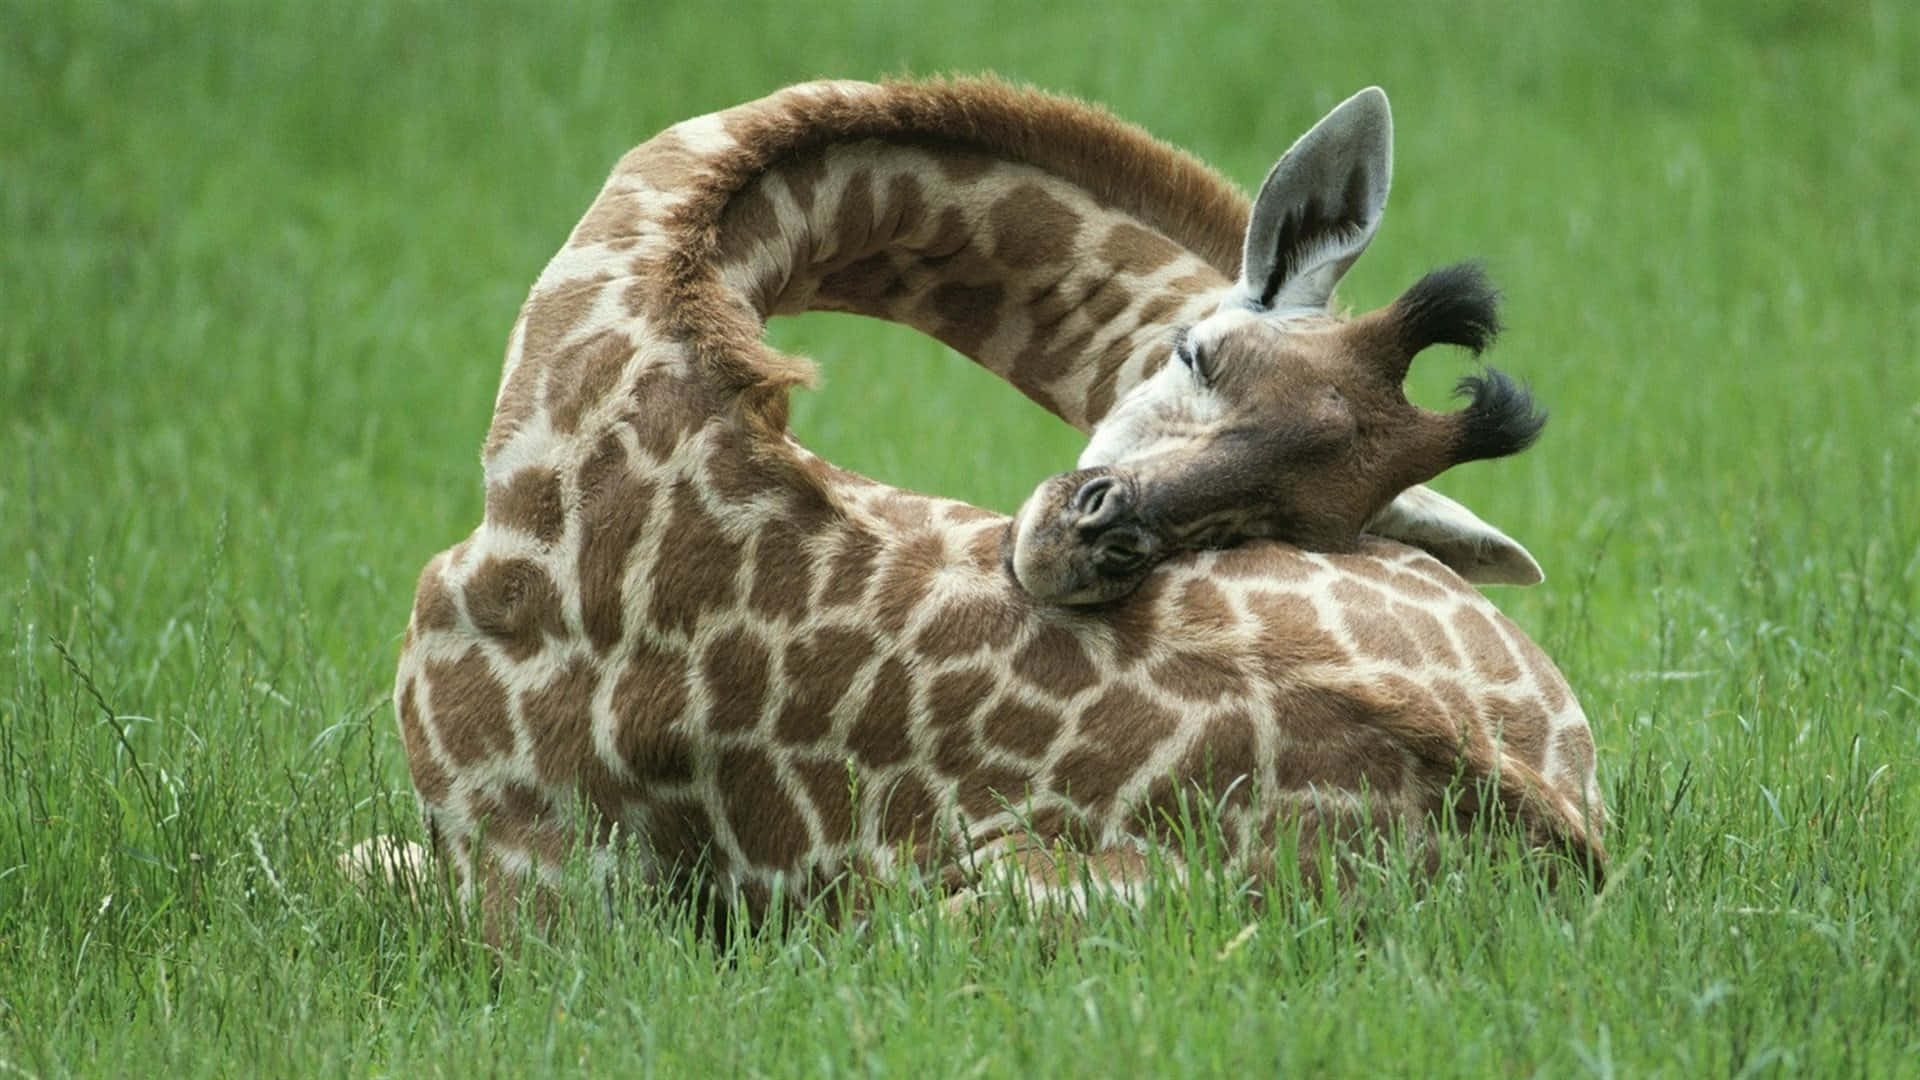 Holdhovedet Højt - En Yndefuld Giraf.